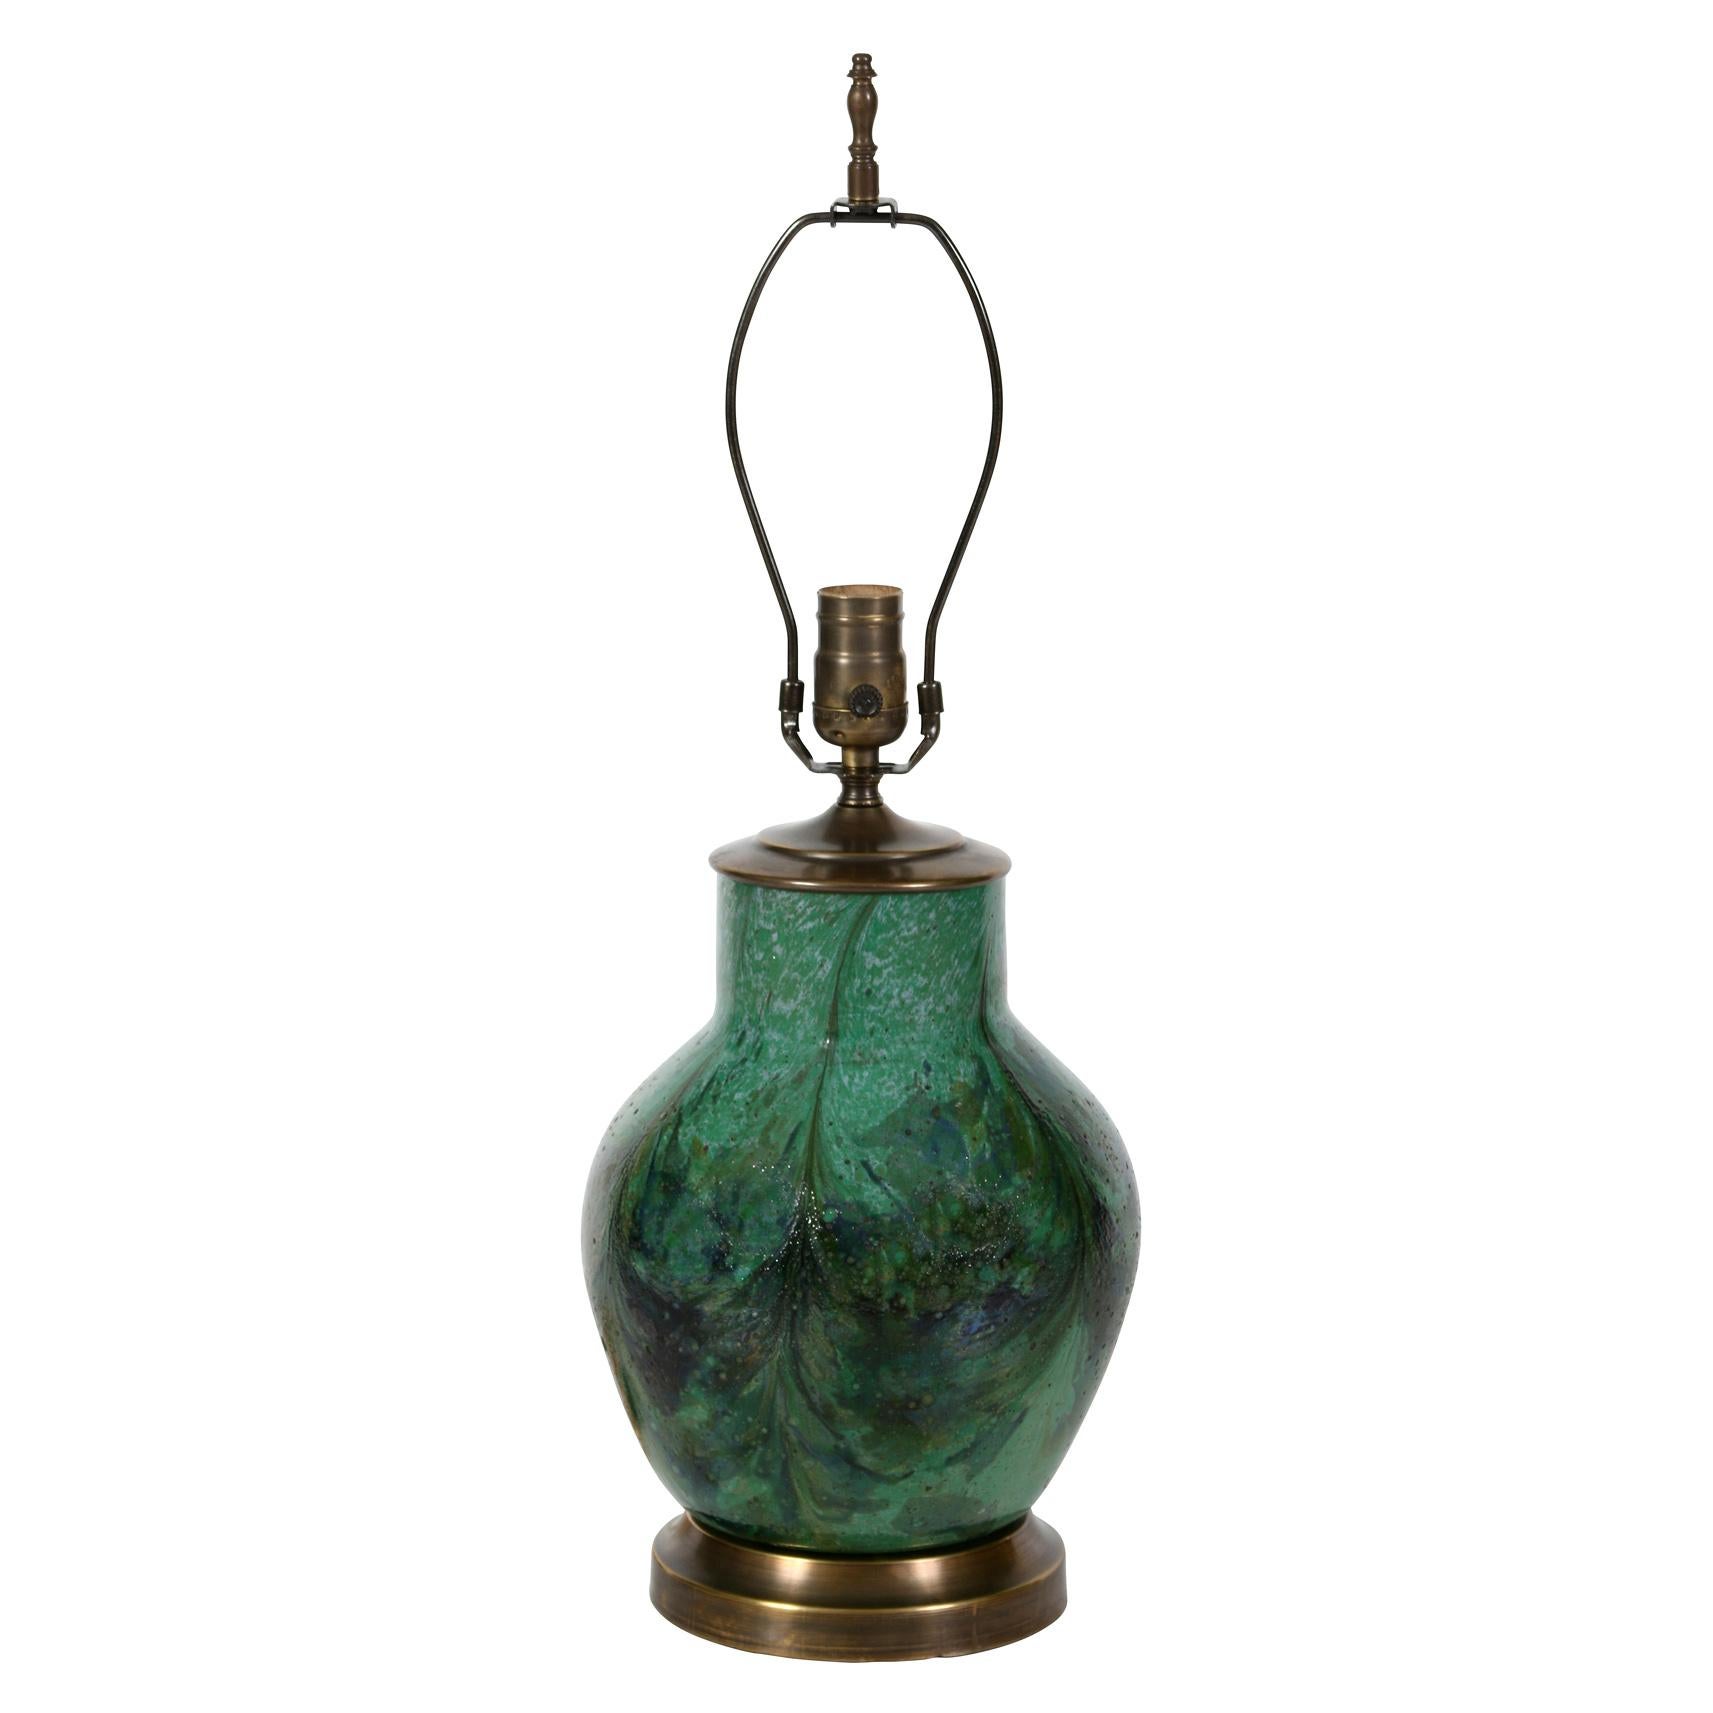 Diese grüne Keramiklampe im asiatischen Stil zeichnet sich durch ihre schöne Glasur aus.  In verschiedenen Grün- und Blautönen hat die Glasur fast einen marmorierten Effekt.  Die auf einem Messingfuß montierte Lampe ist mit einem plissierten